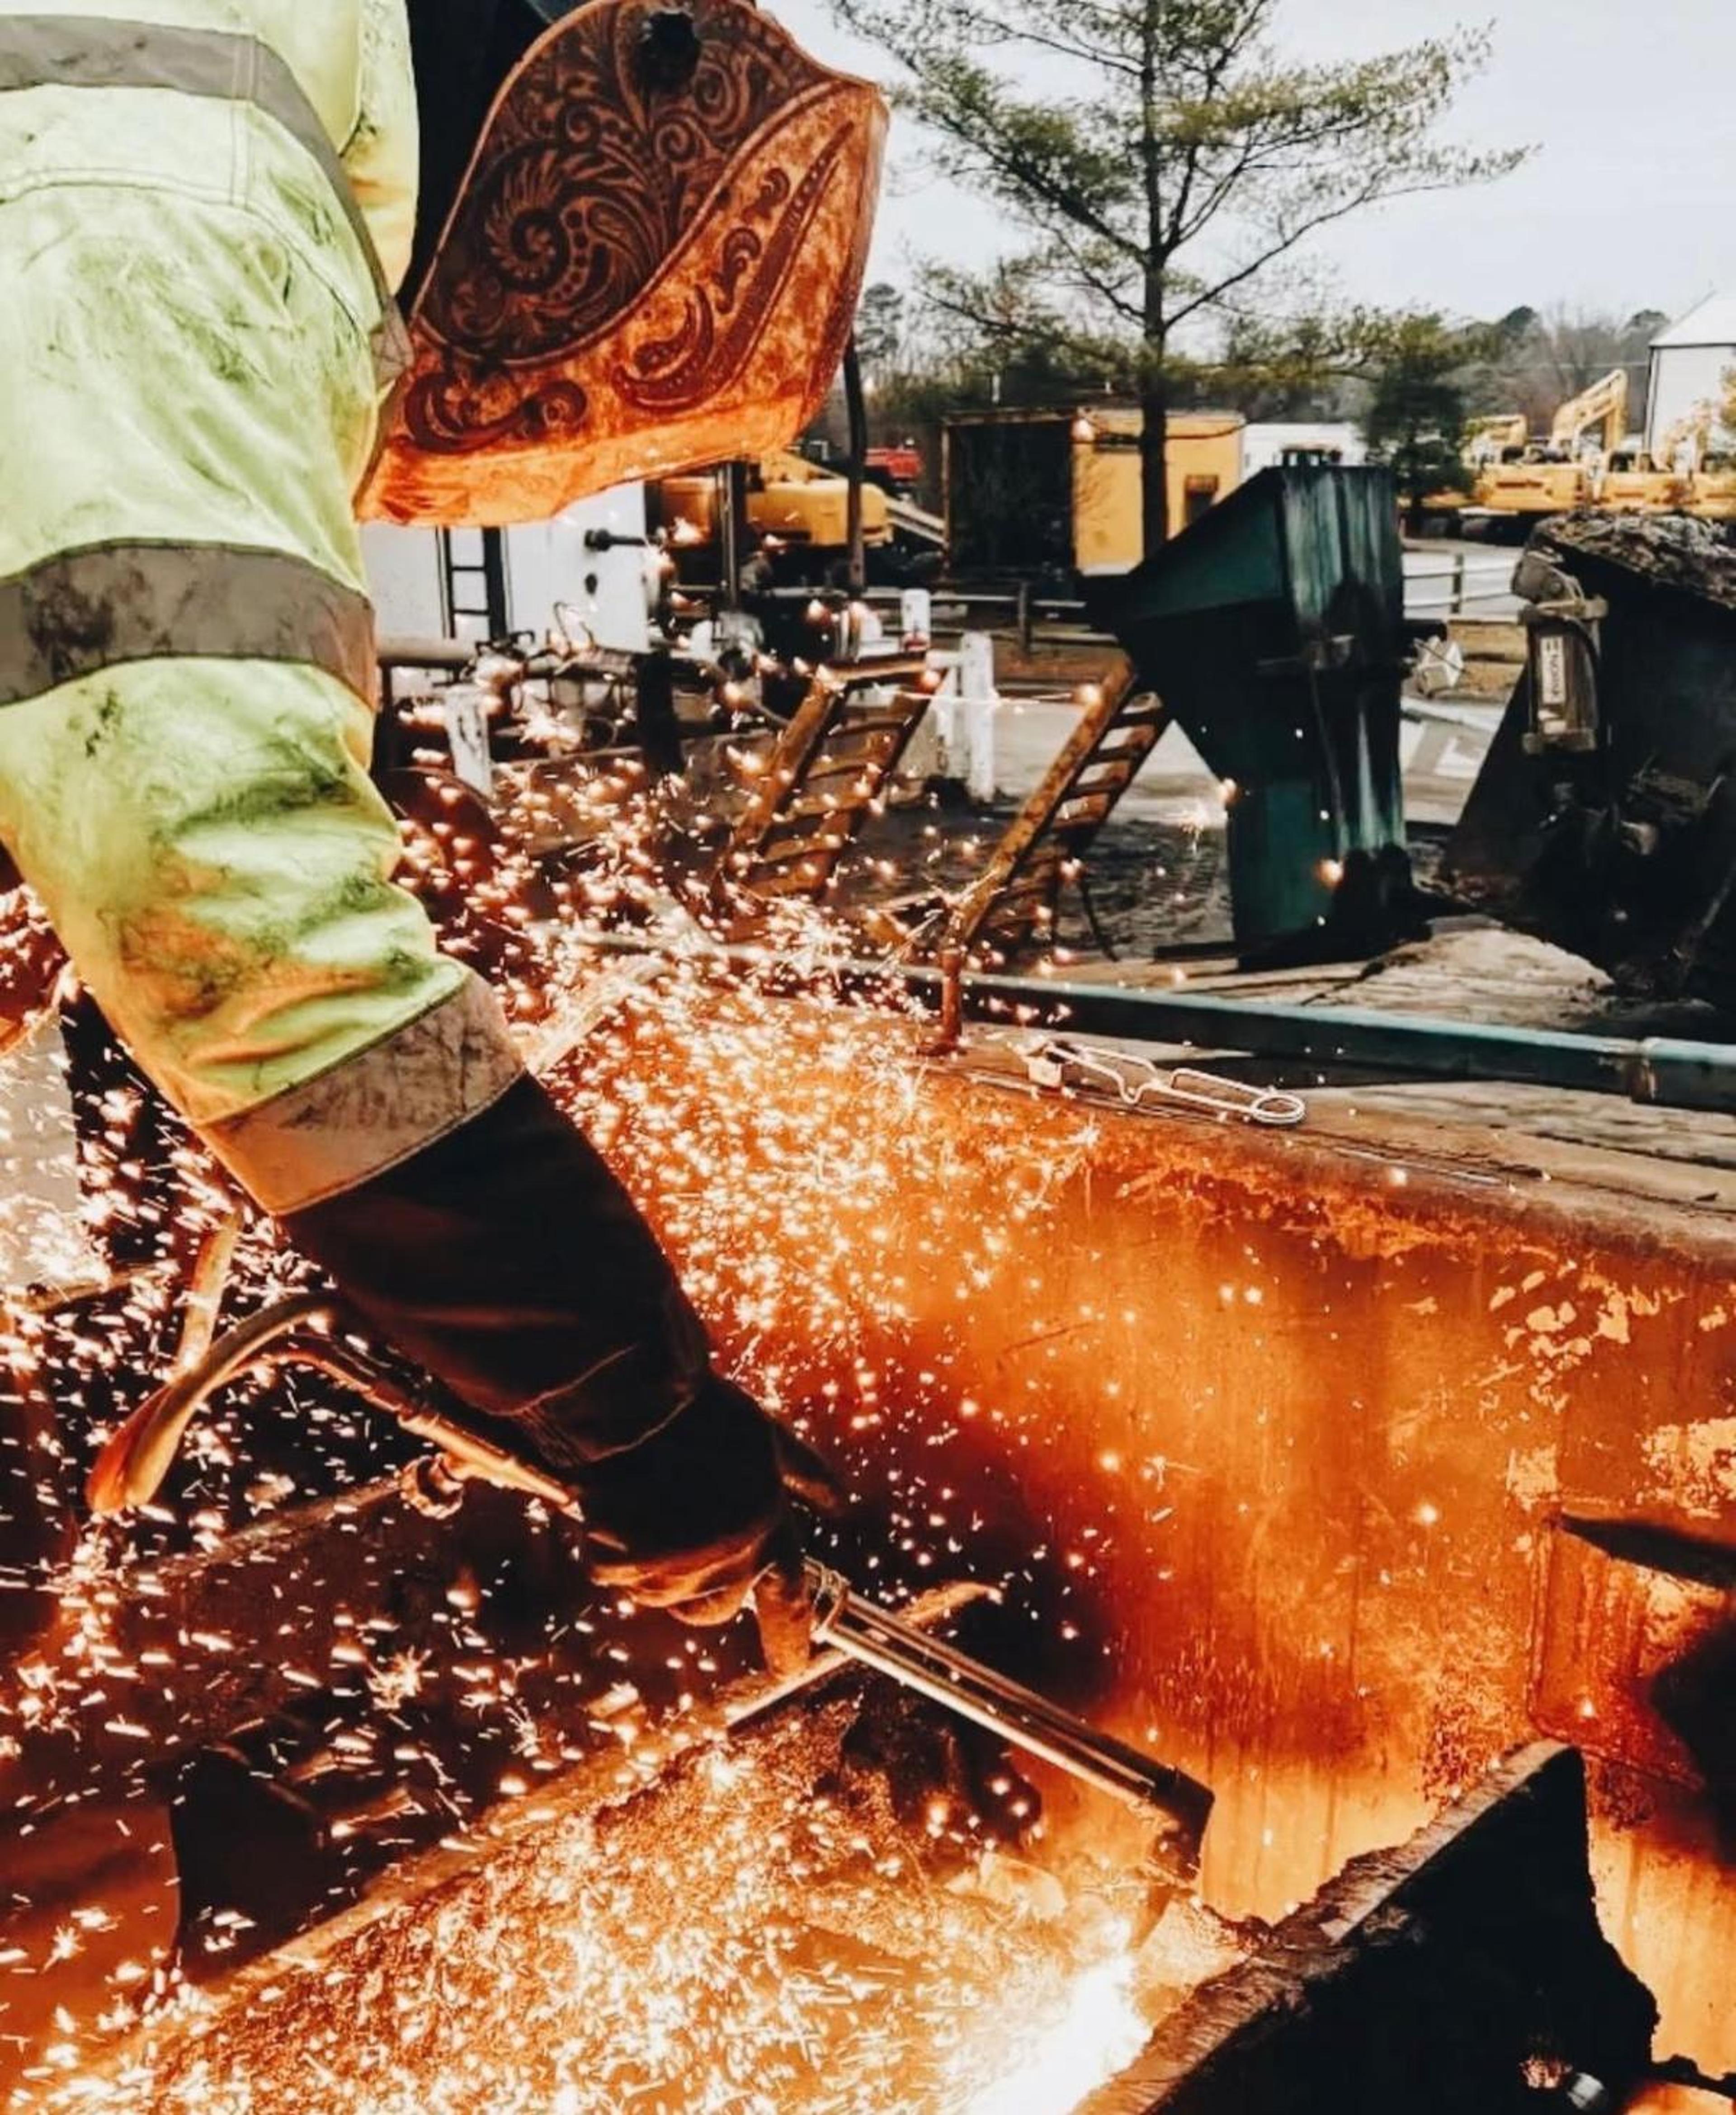 a construction worker welding on a jobsite